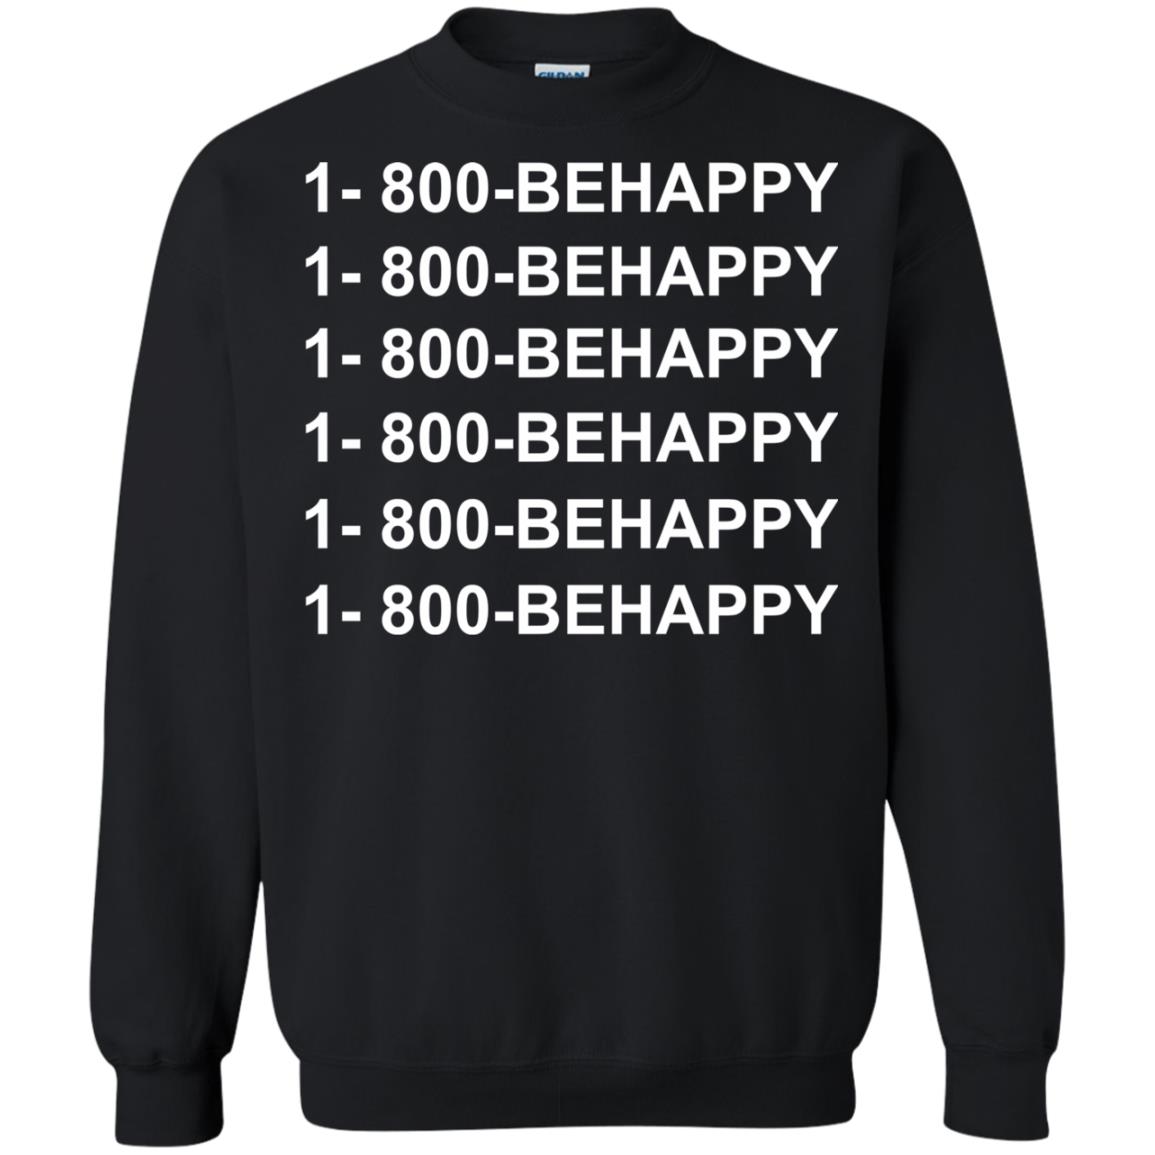 1 800 behappy sweatshirt - black